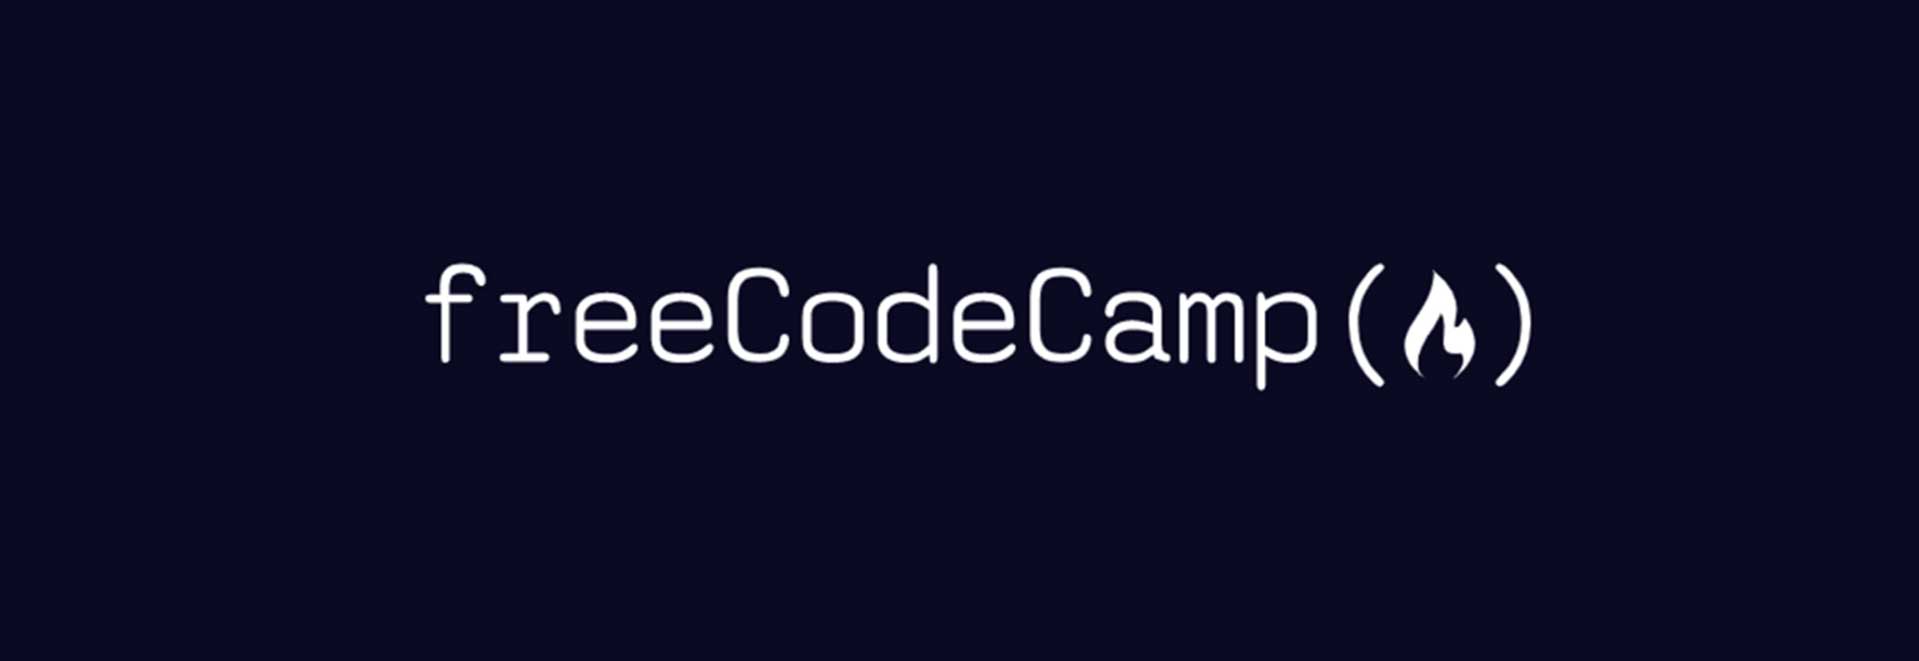 موقع FreeCodeCamp